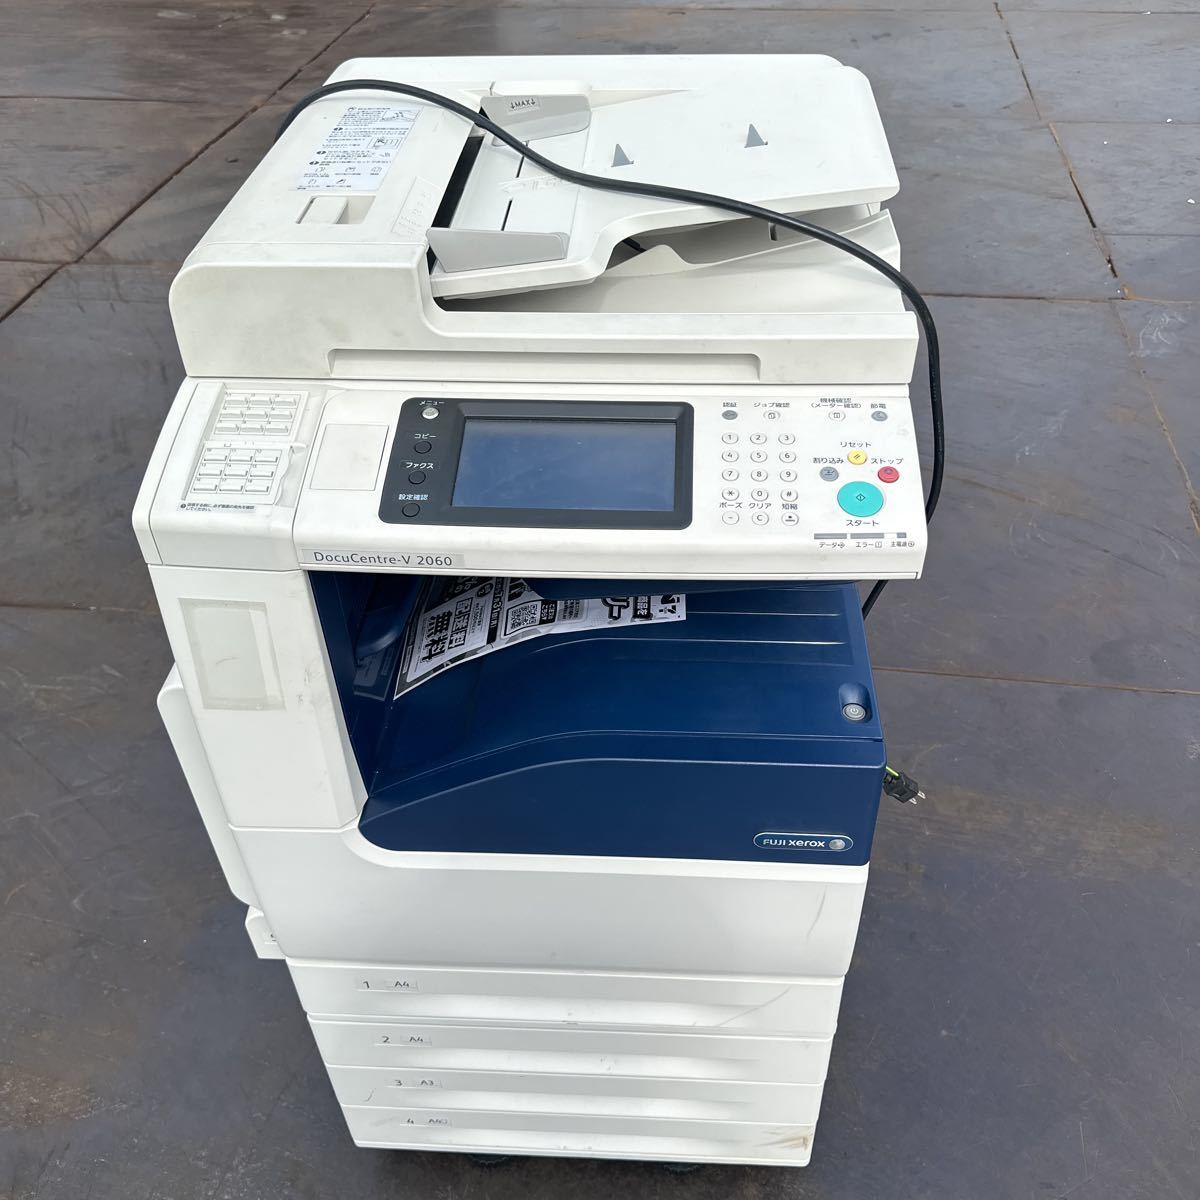 [Указанная ограниченная] Fuji Xerox Docucentre-V 2060 Black White 4-ступенчатая операция подтверждена текущая статус выступления